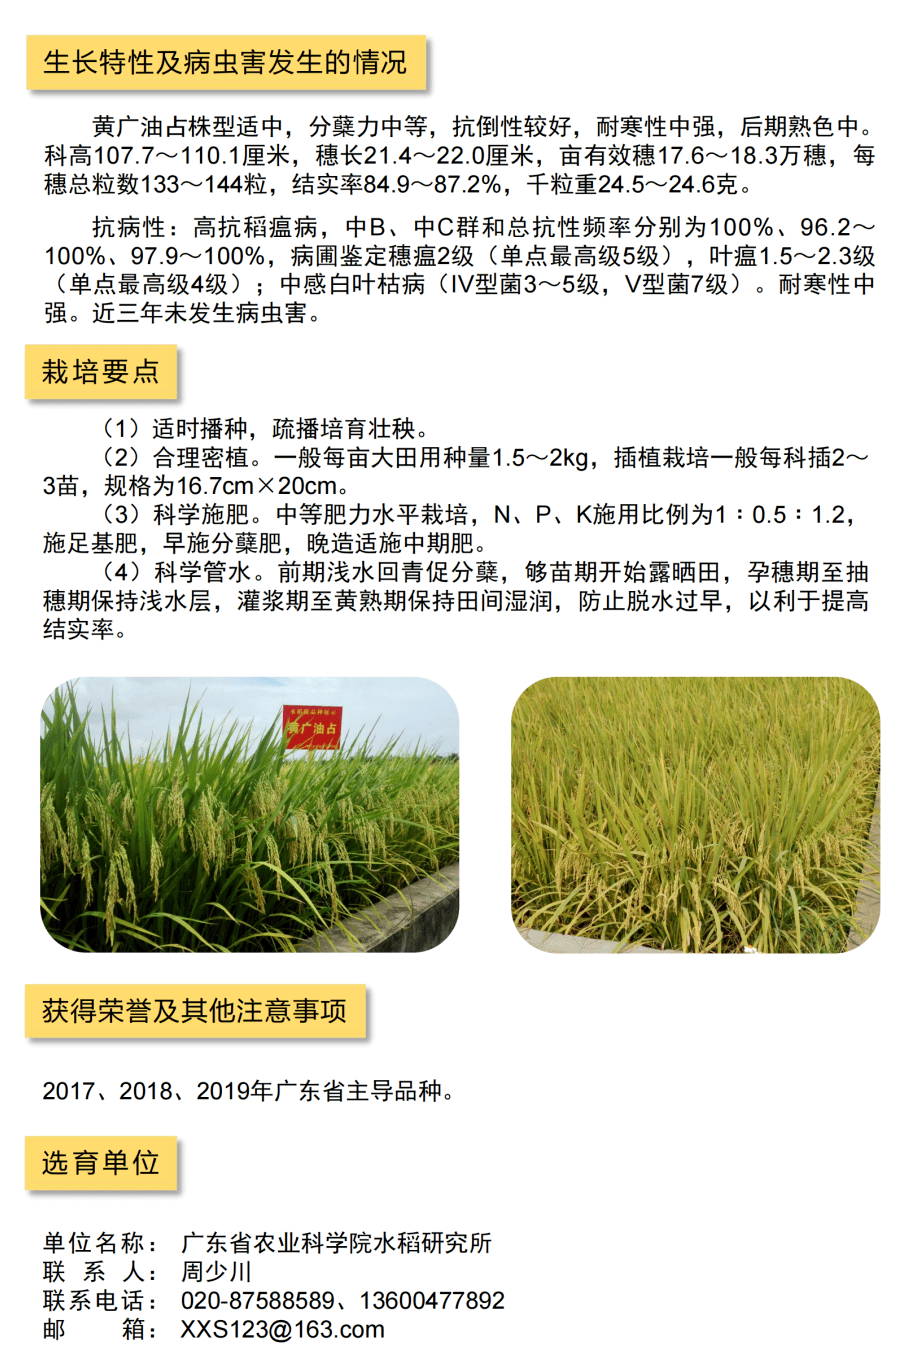 详解一起来看2021年广东省农业主导品种水稻篇